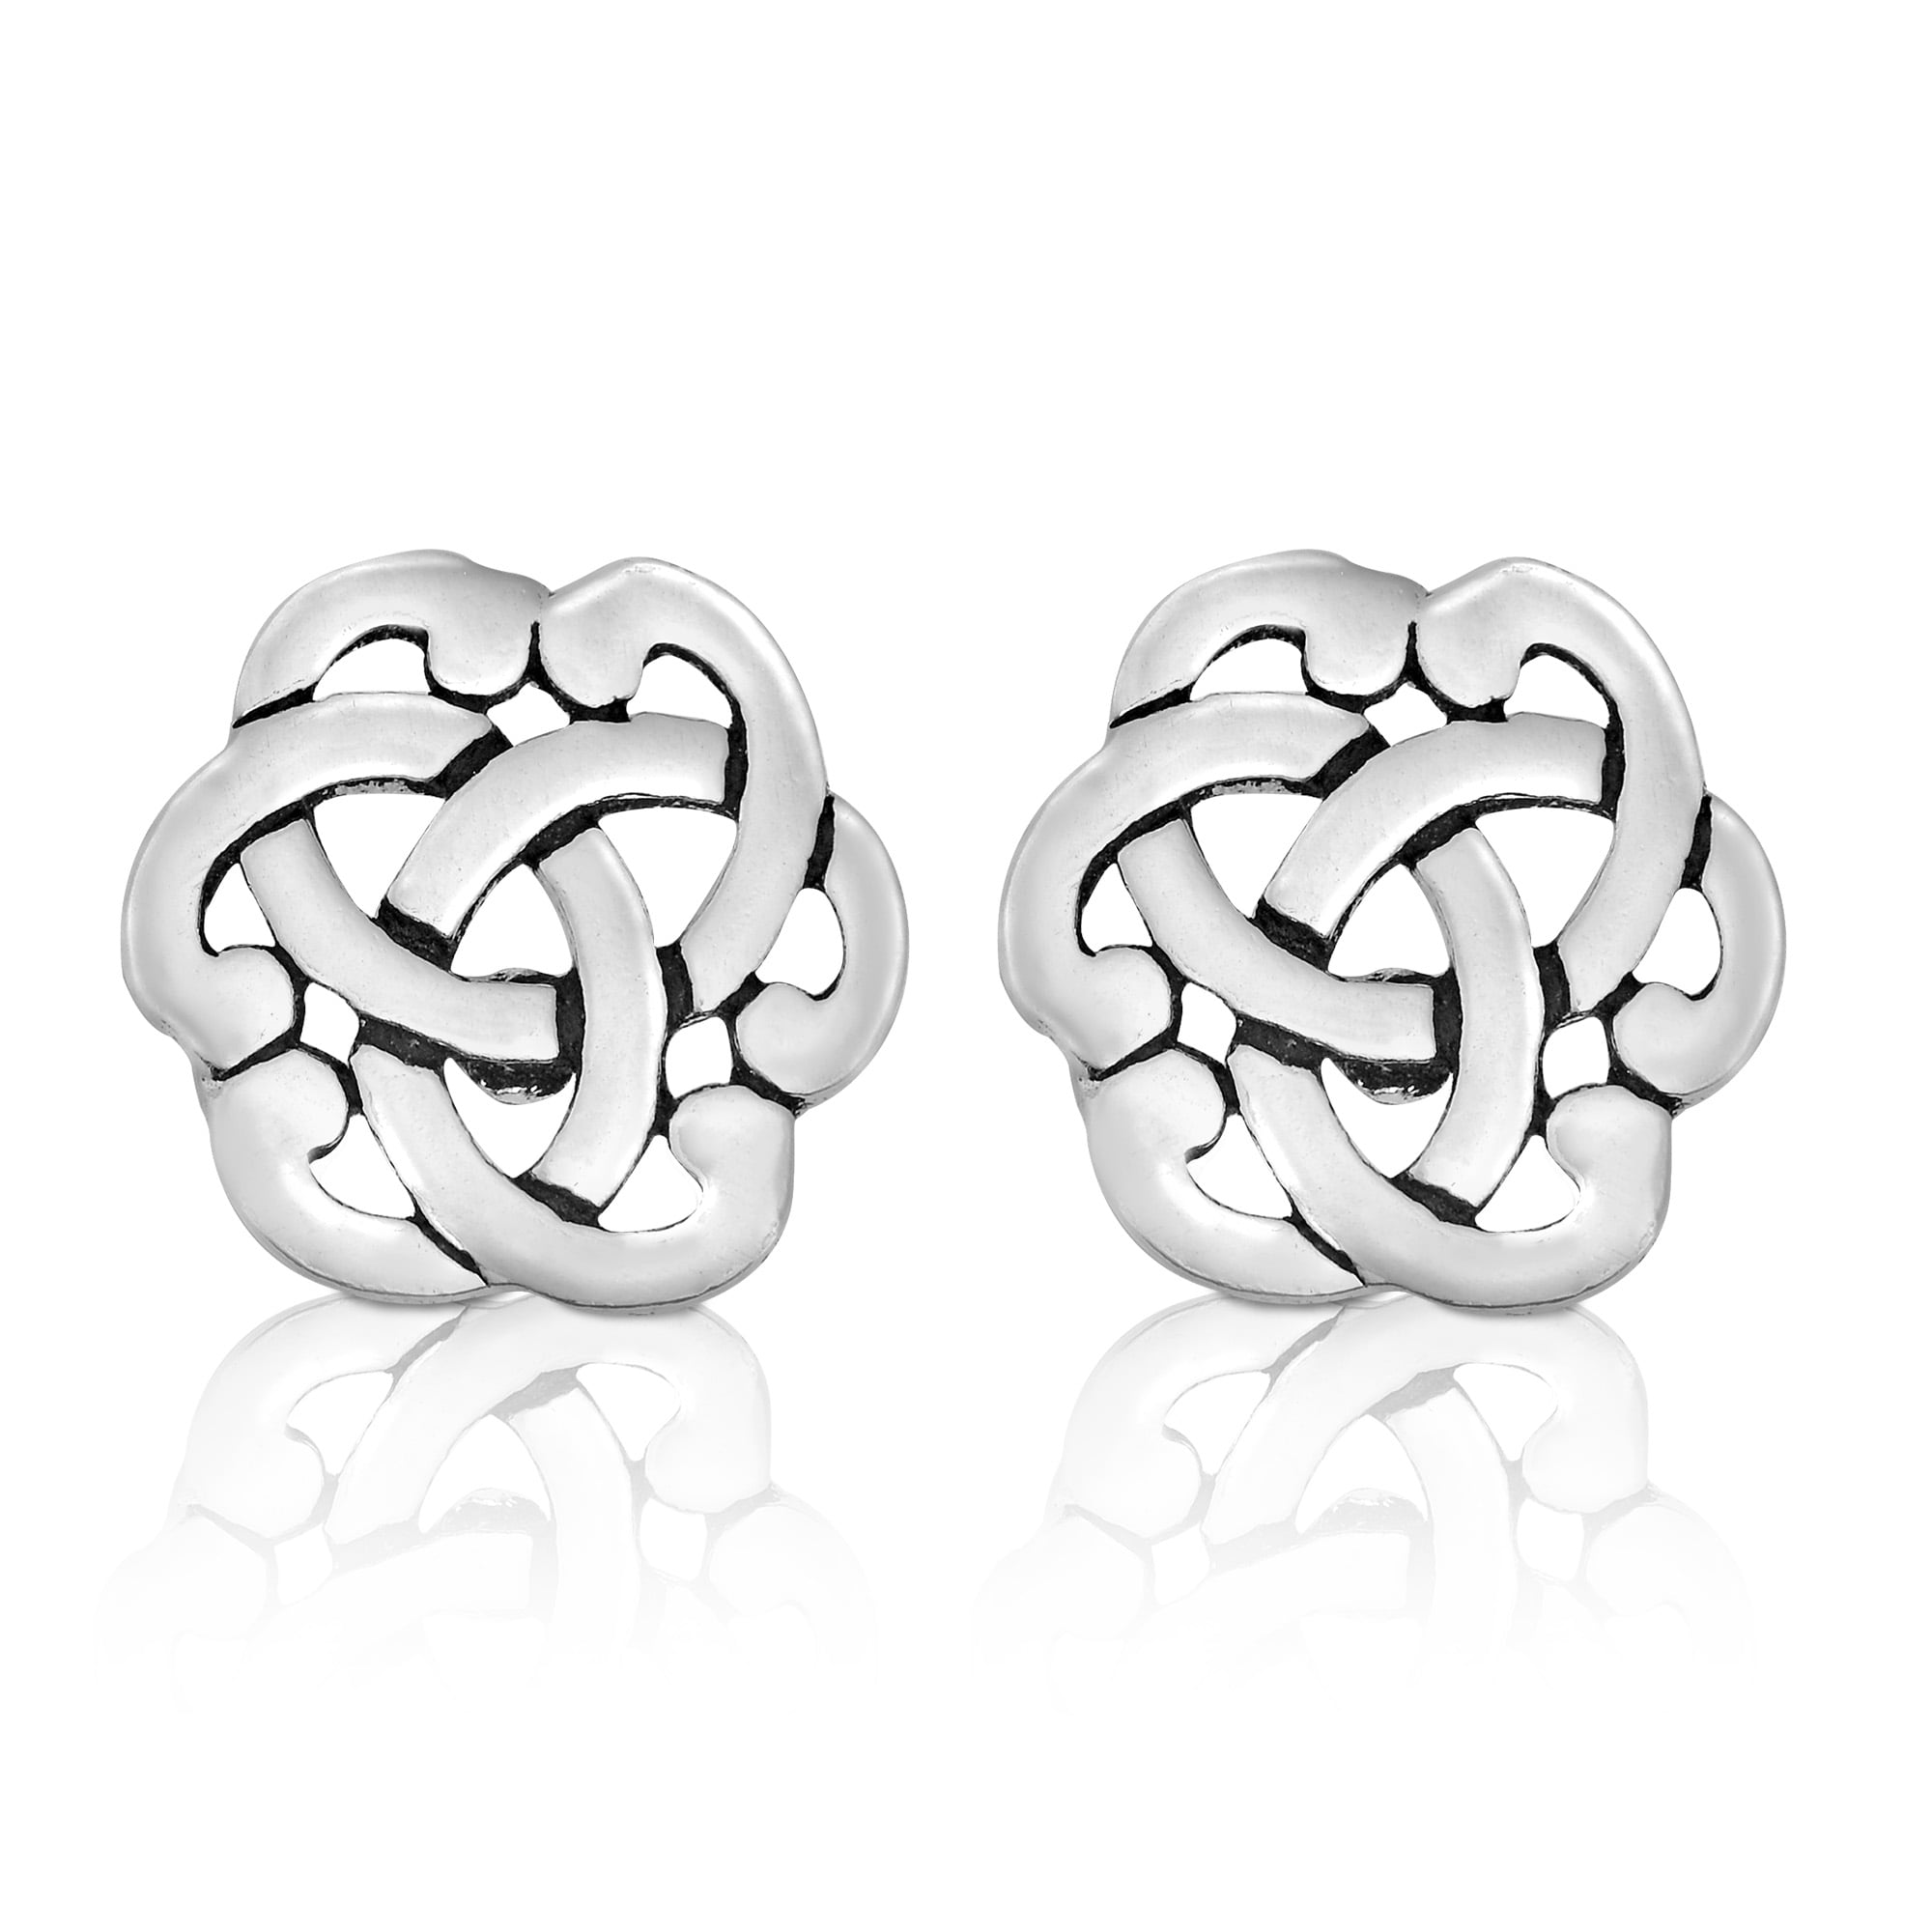 Interlocking Celtic Knot Sterling Silver Stud Earrings - Walmart.com